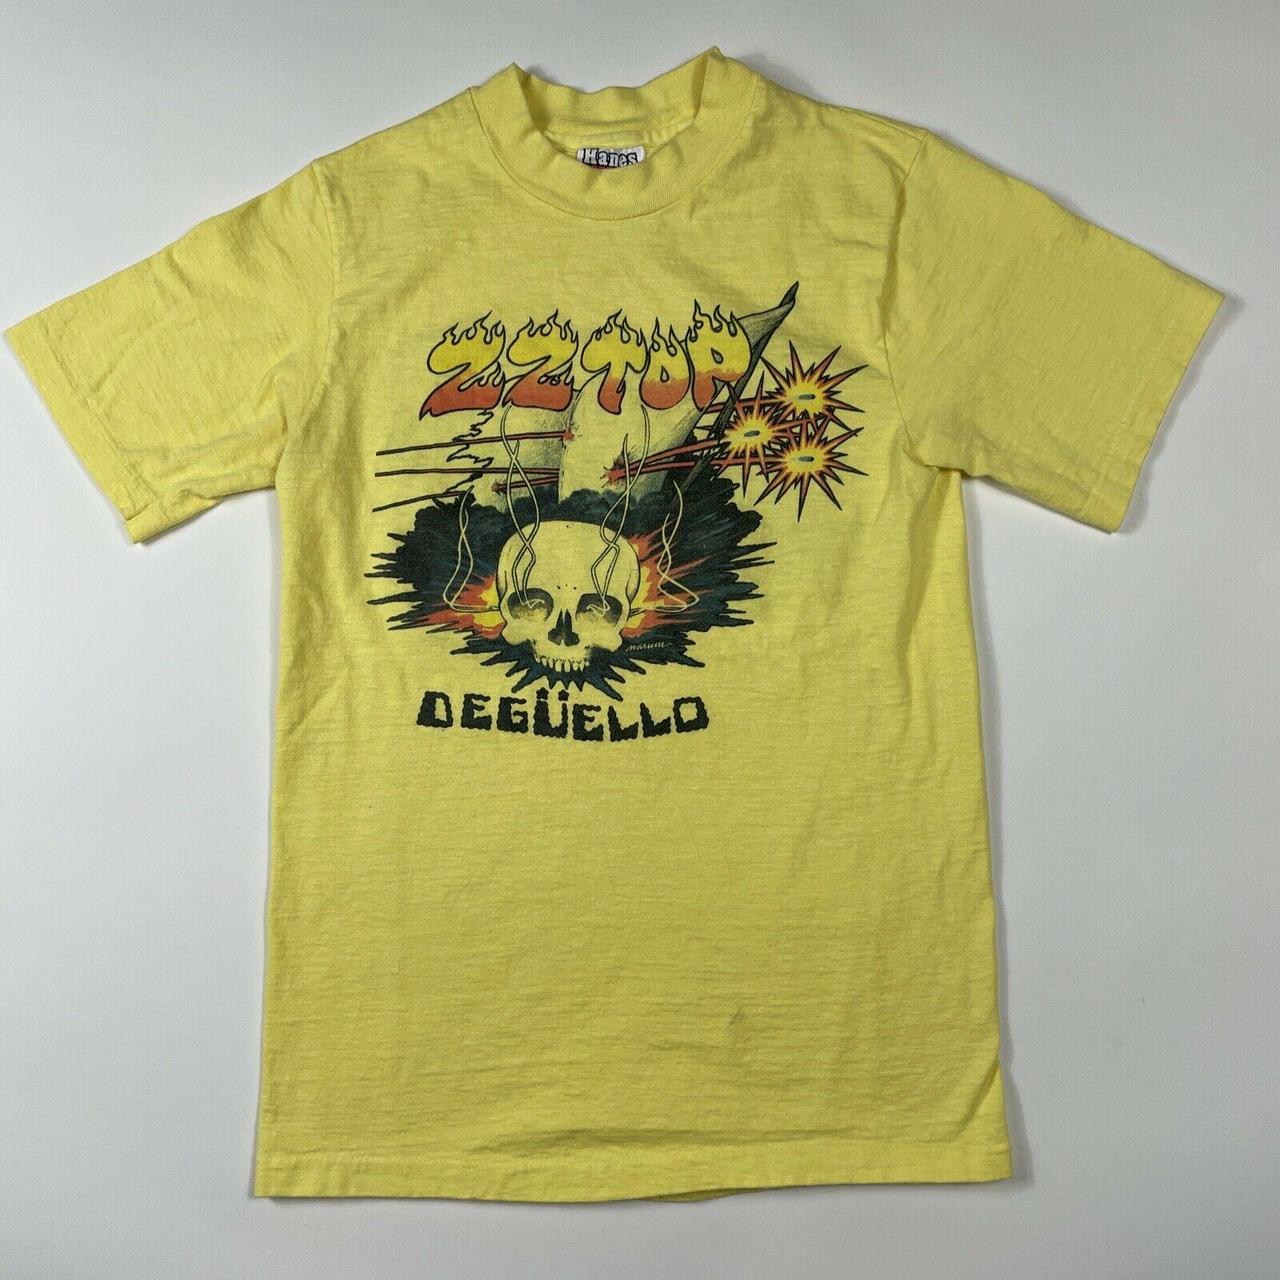 Vintage 1980 ZZ Top Deguello Shirt Expect No Quarter... - Depop